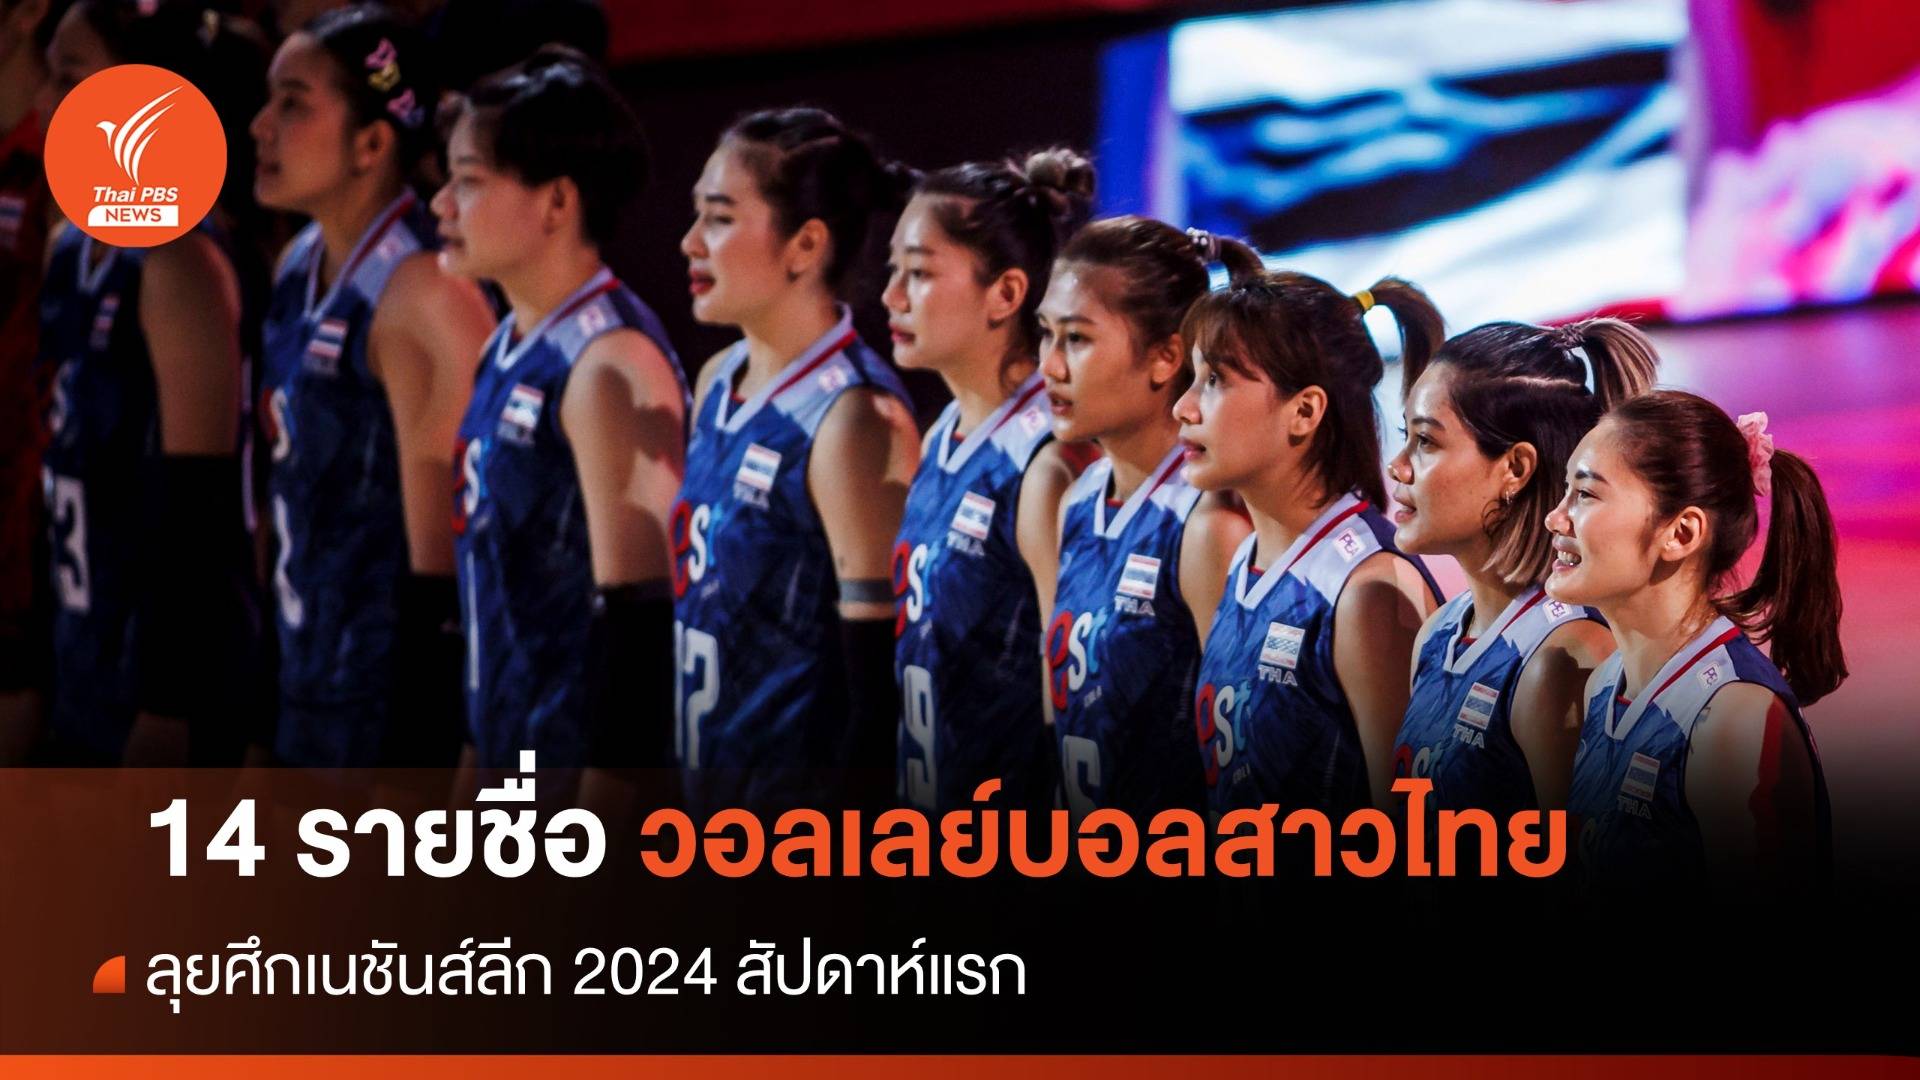 14 รายชื่อวอลเลย์บอลสาวไทยลุยศึกเนชันส์ลีก 2024 สัปดาห์แรก